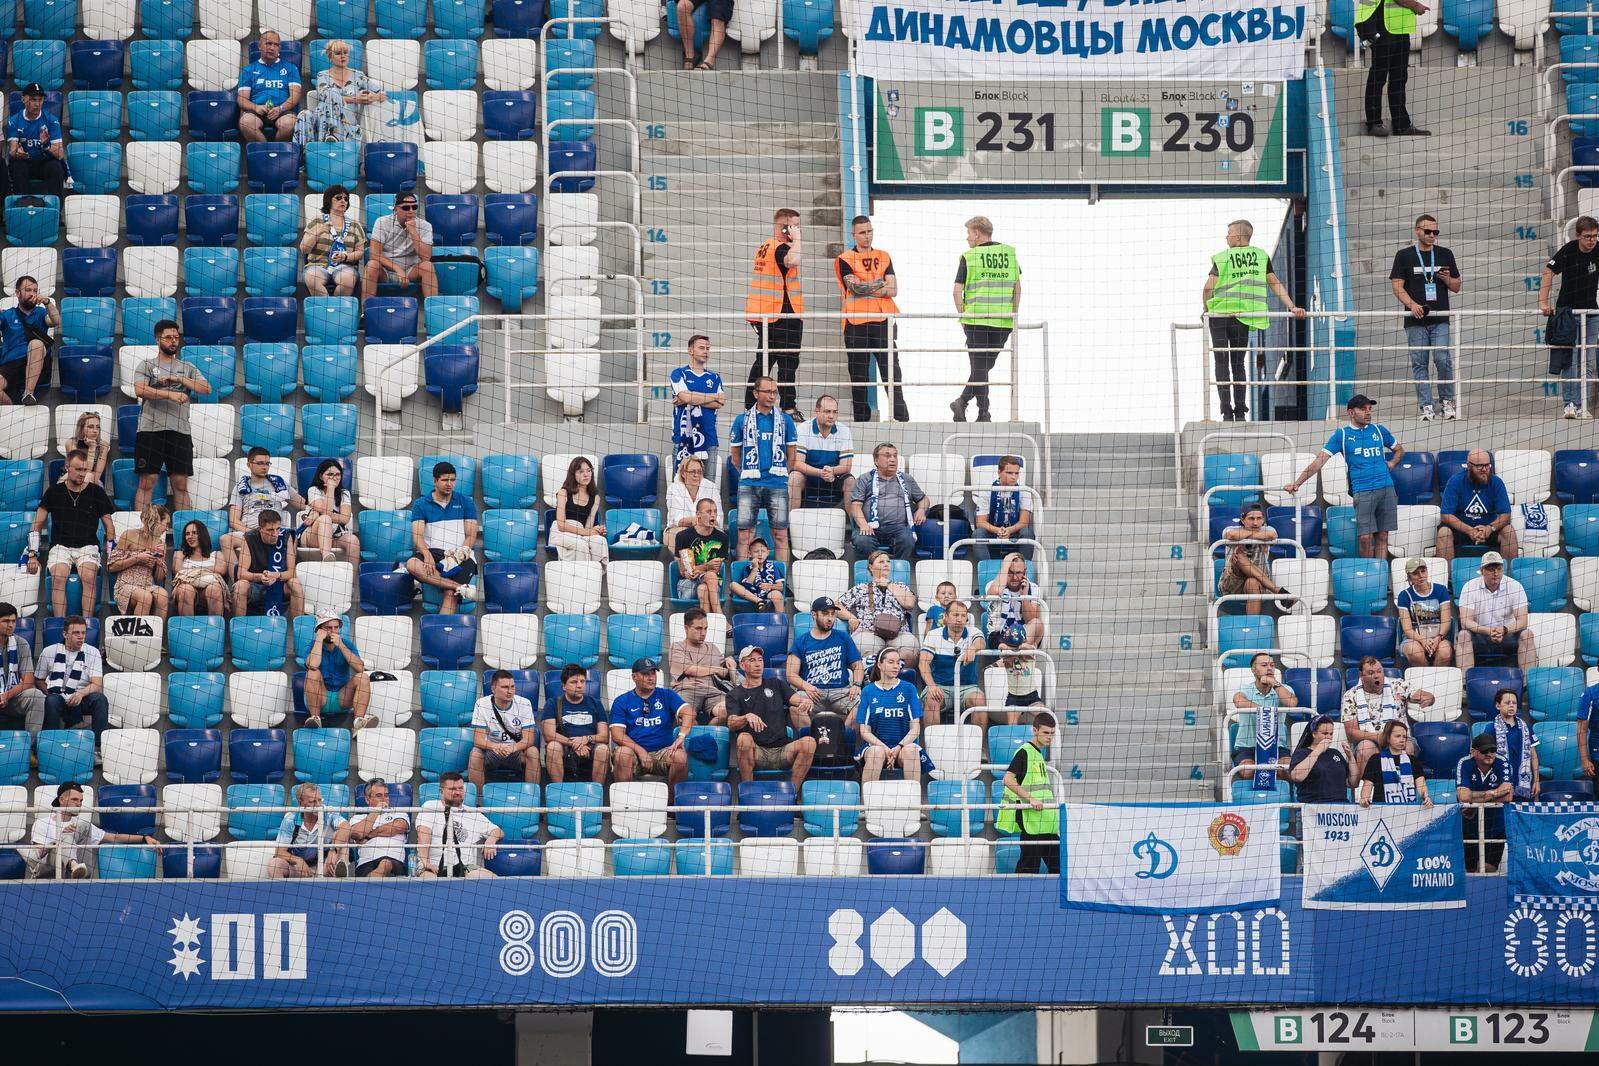 Noticias del FC "Dynamo" Moscú | Información para los aficionados que planean apoyar al equipo en Nizhni Nóvgorod. Sitio oficial del club Dynamo.